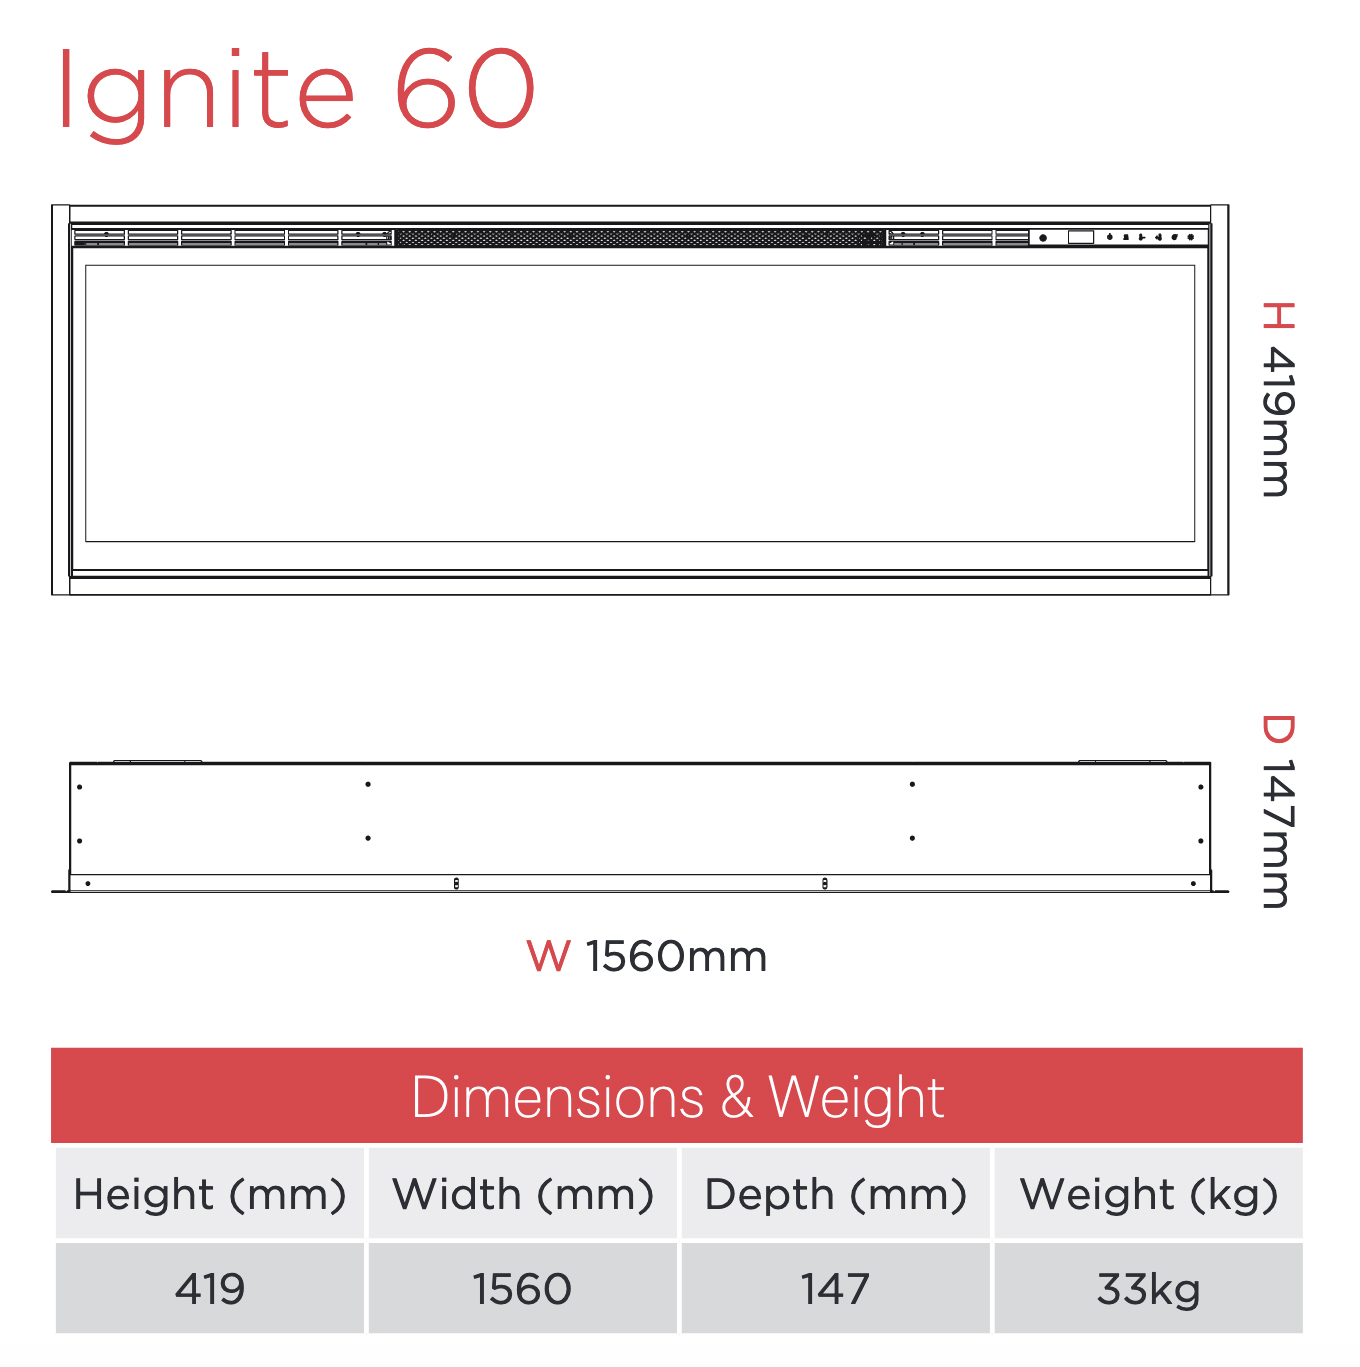 Ignite 60 Electric Fire Sizes Dimplex